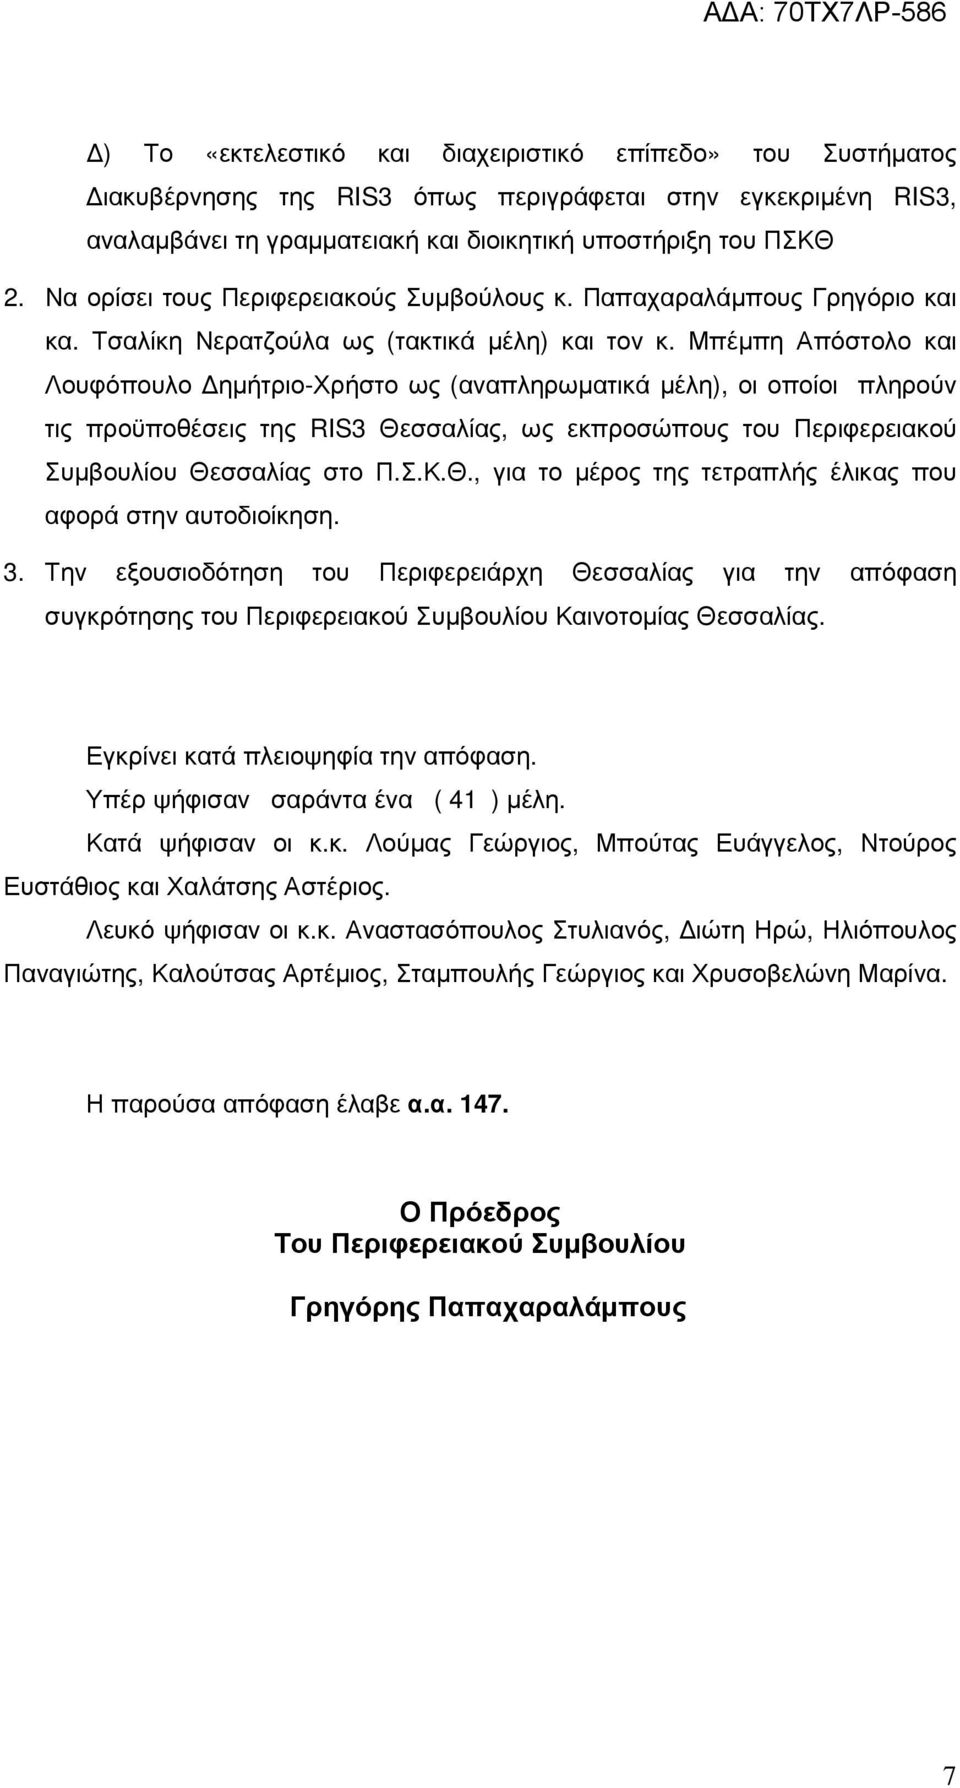 Μπέµπη Απόστολο και Λουφόπουλο ηµήτριο-χρήστο ως (αναπληρωµατικά µέλη), οι οποίοι πληρούν τις προϋποθέσεις της RIS3 Θεσσαλίας, ως εκπροσώπους του Περιφερειακού Συµβουλίου Θεσσαλίας στο Π.Σ.Κ.Θ., για το µέρος της τετραπλής έλικας που αφορά στην αυτοδιοίκηση.